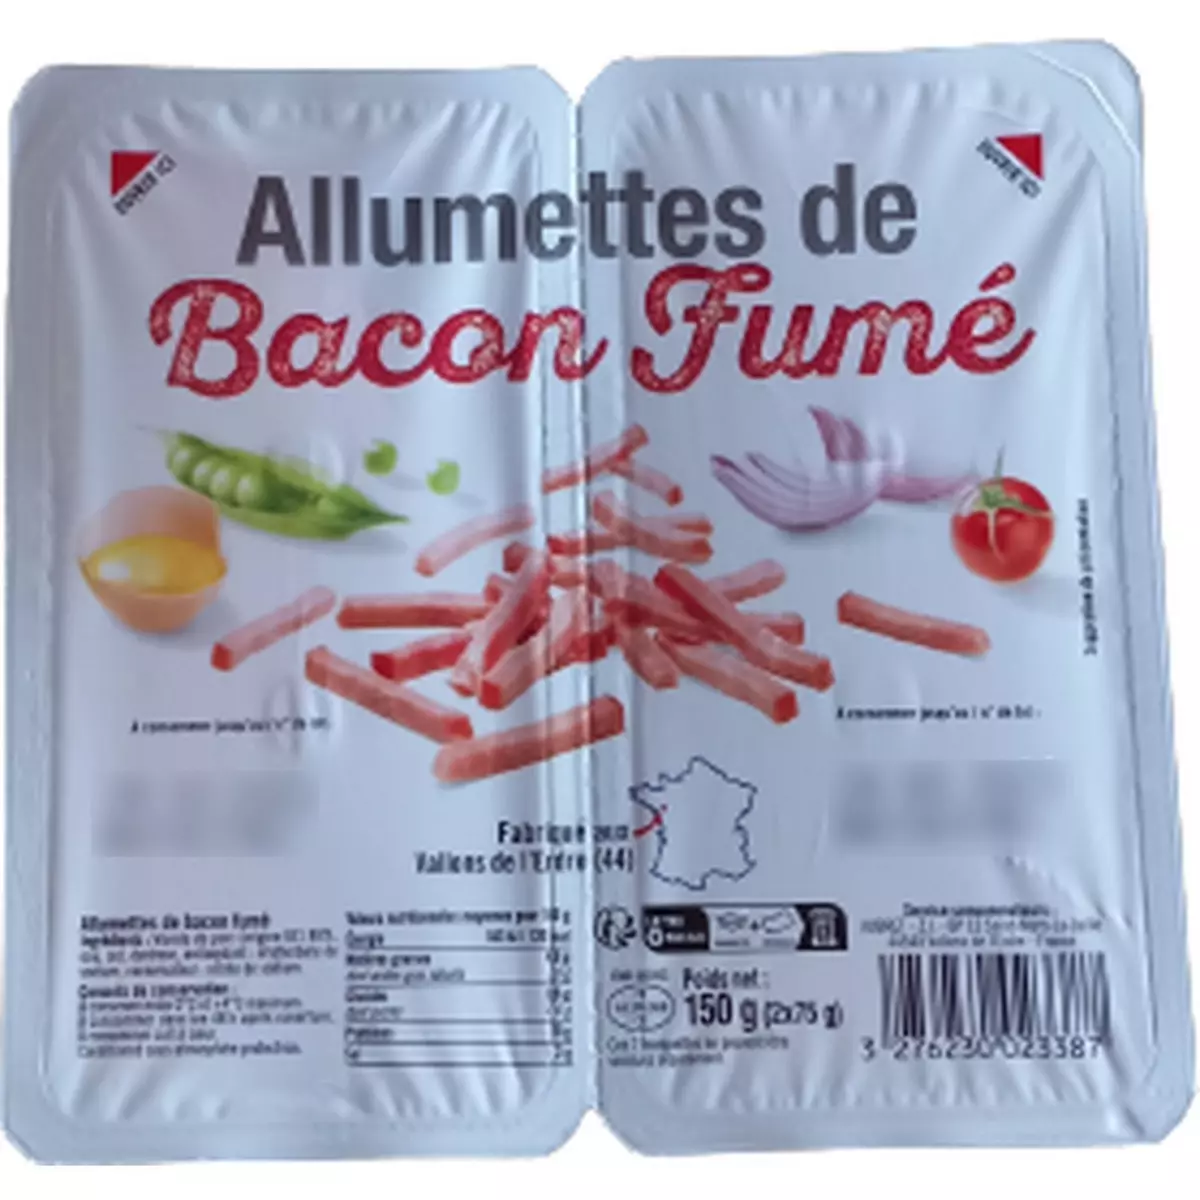 Allumettes de bacon fumé 2x75g 150g